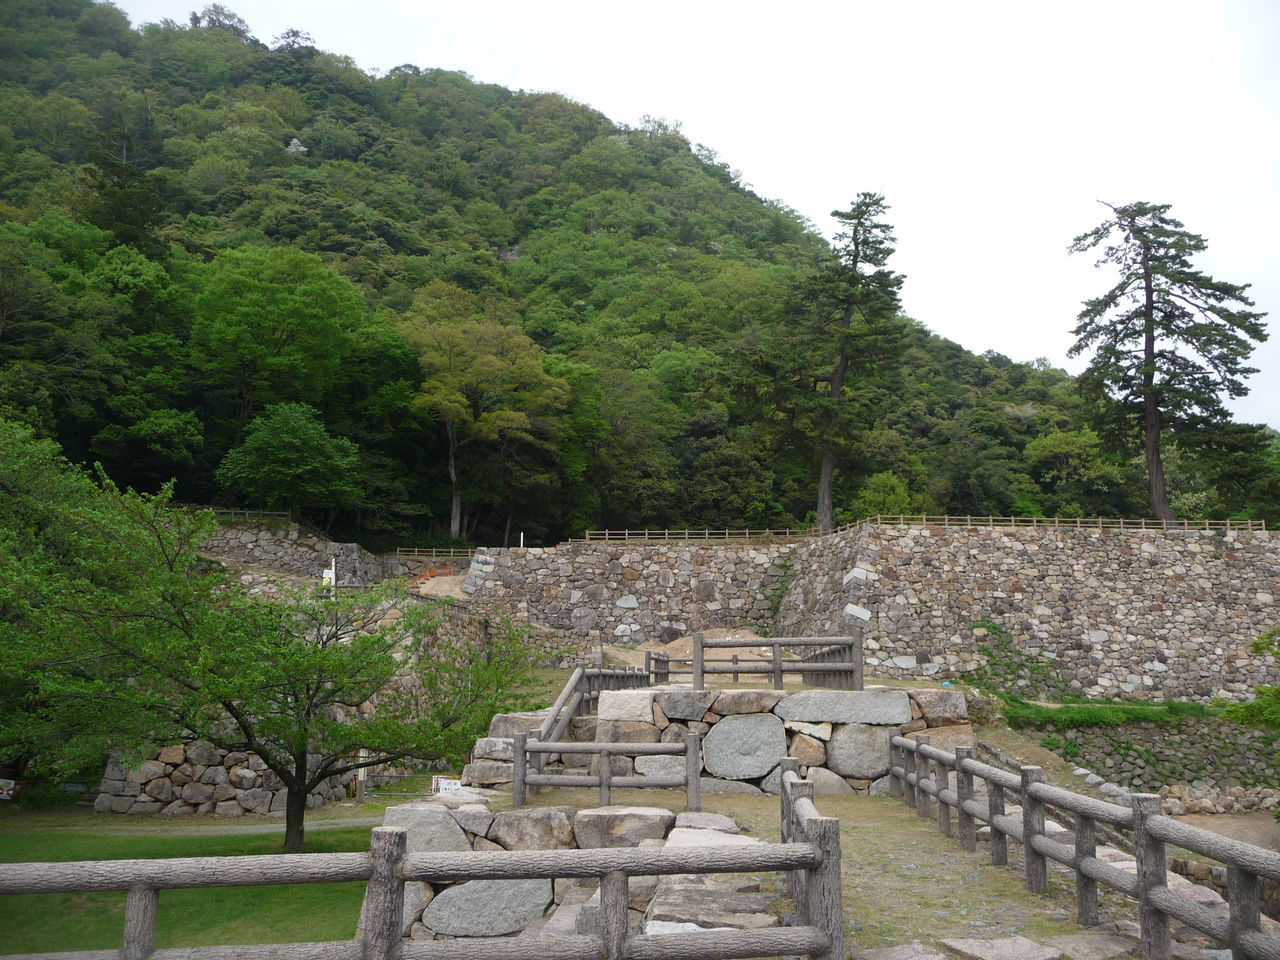 鳥取城の渇殺 4ヶ月に渡る秀吉の兵糧攻め 年表でみる戦国時代